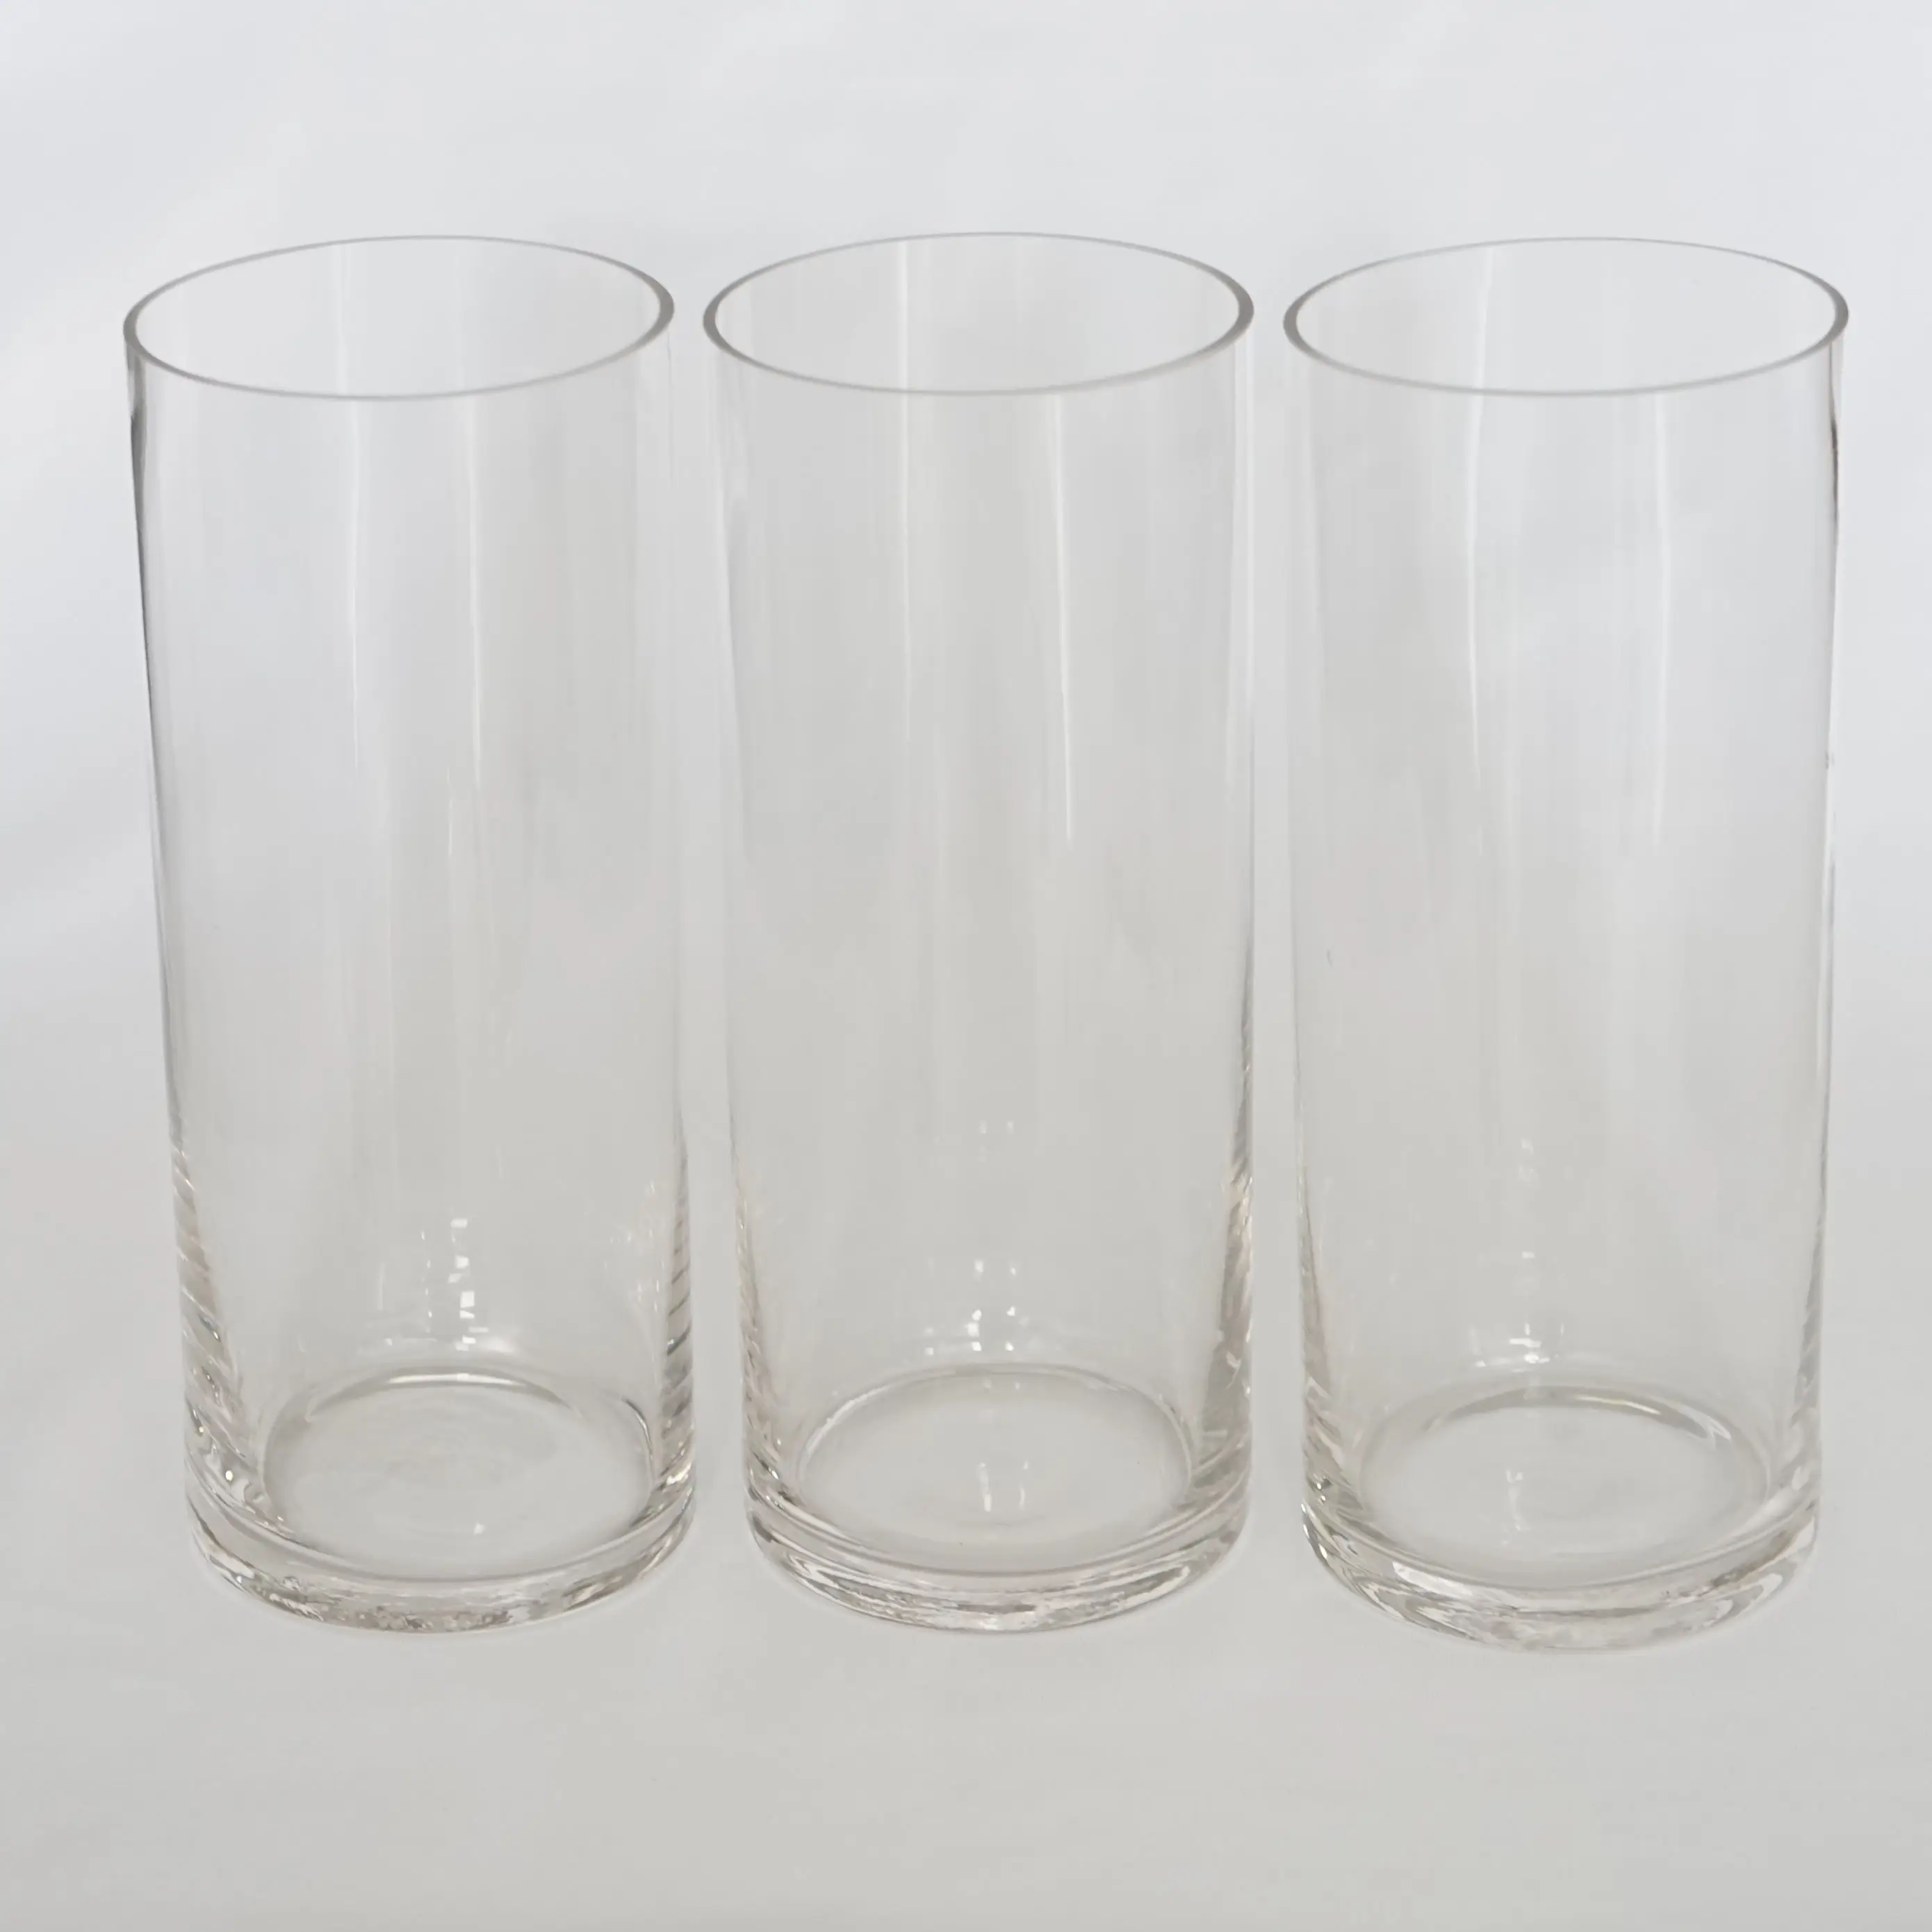 Großhandel zu Hause dekorative hohe Form anpassen klar eingerieben Glaszylinder recyceln Glas Blumenvasen